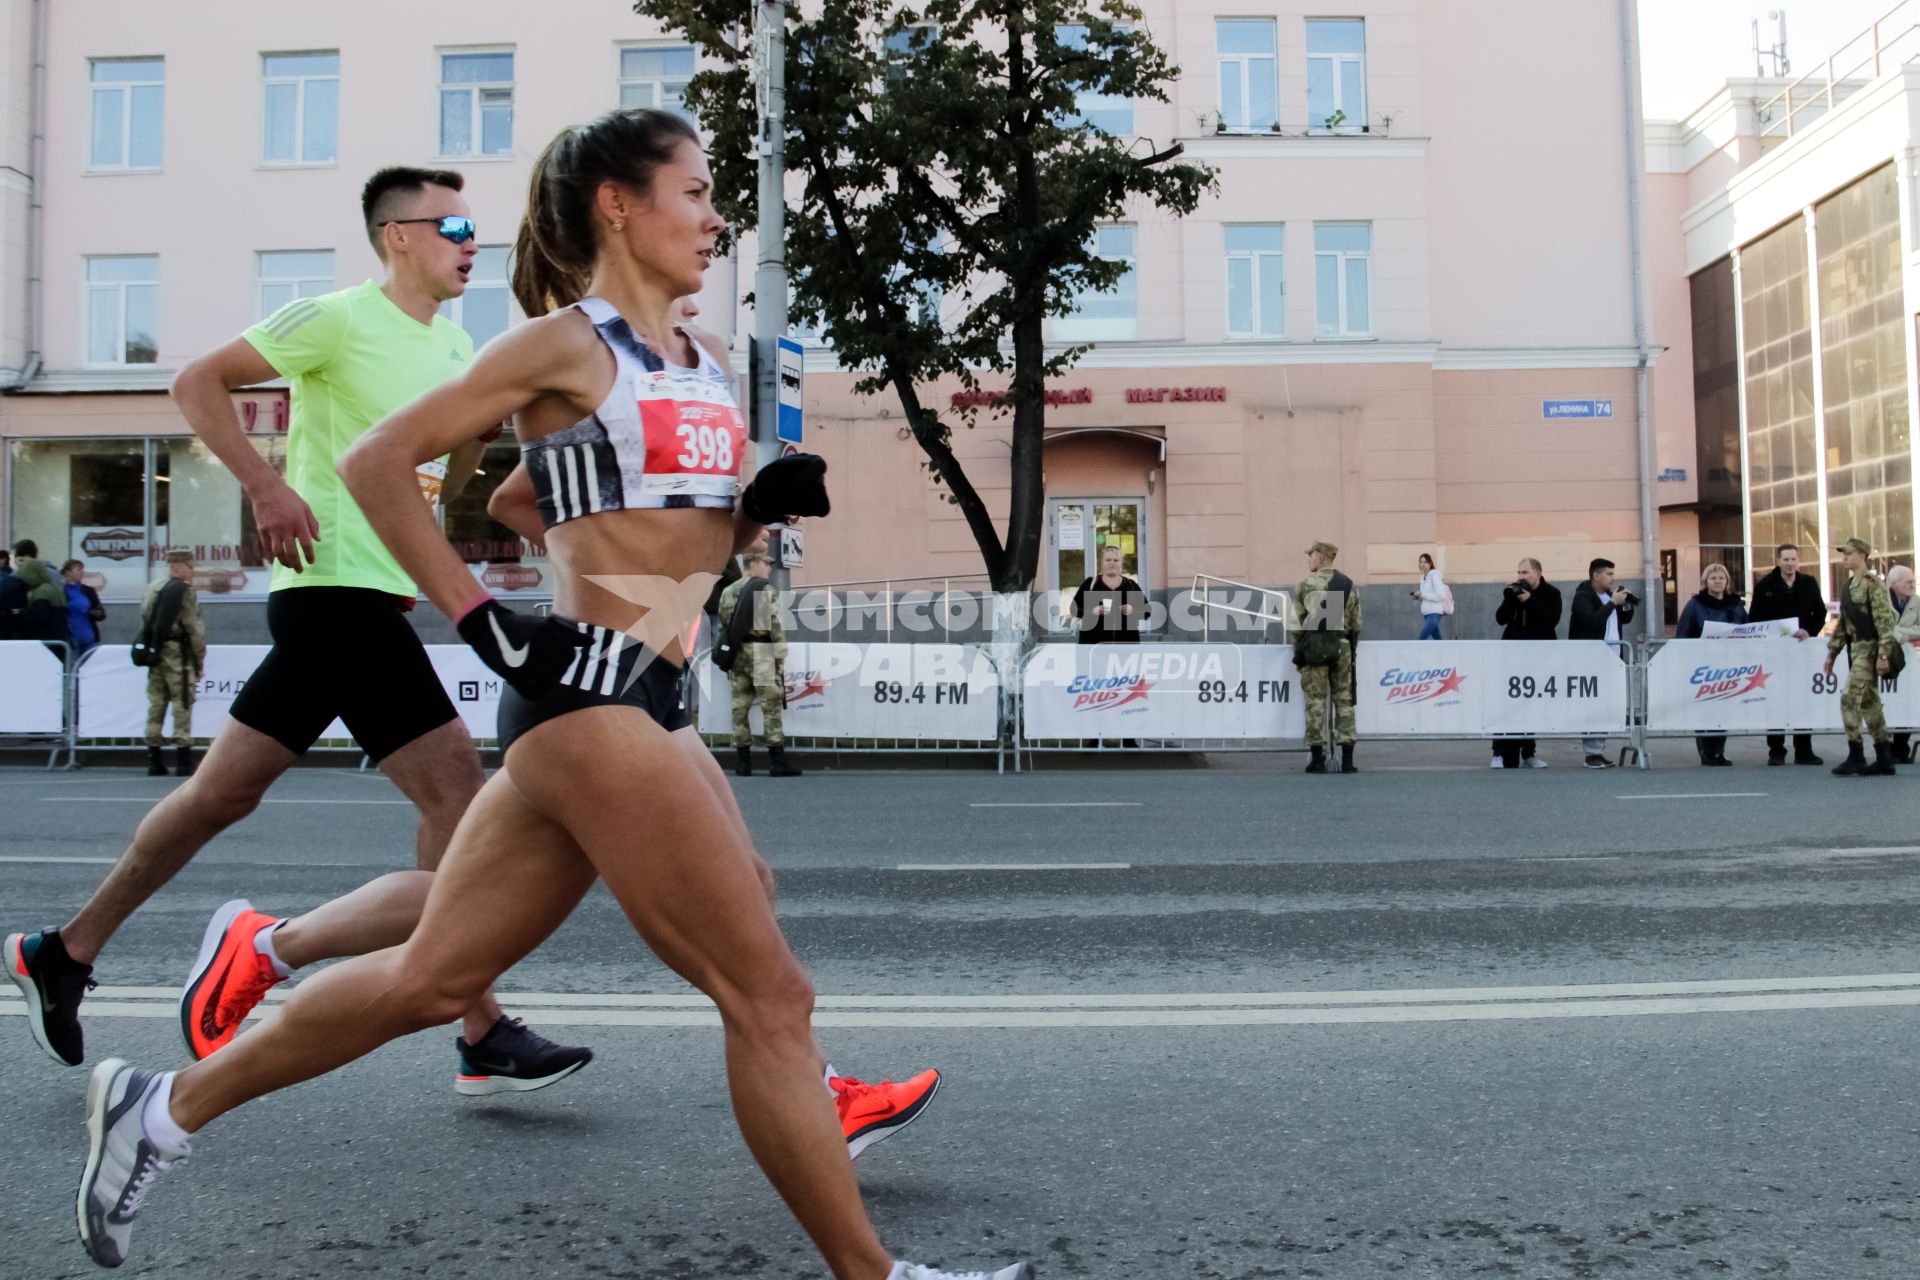 Пермь. Участники третьего международного марафона во время забега по улице.